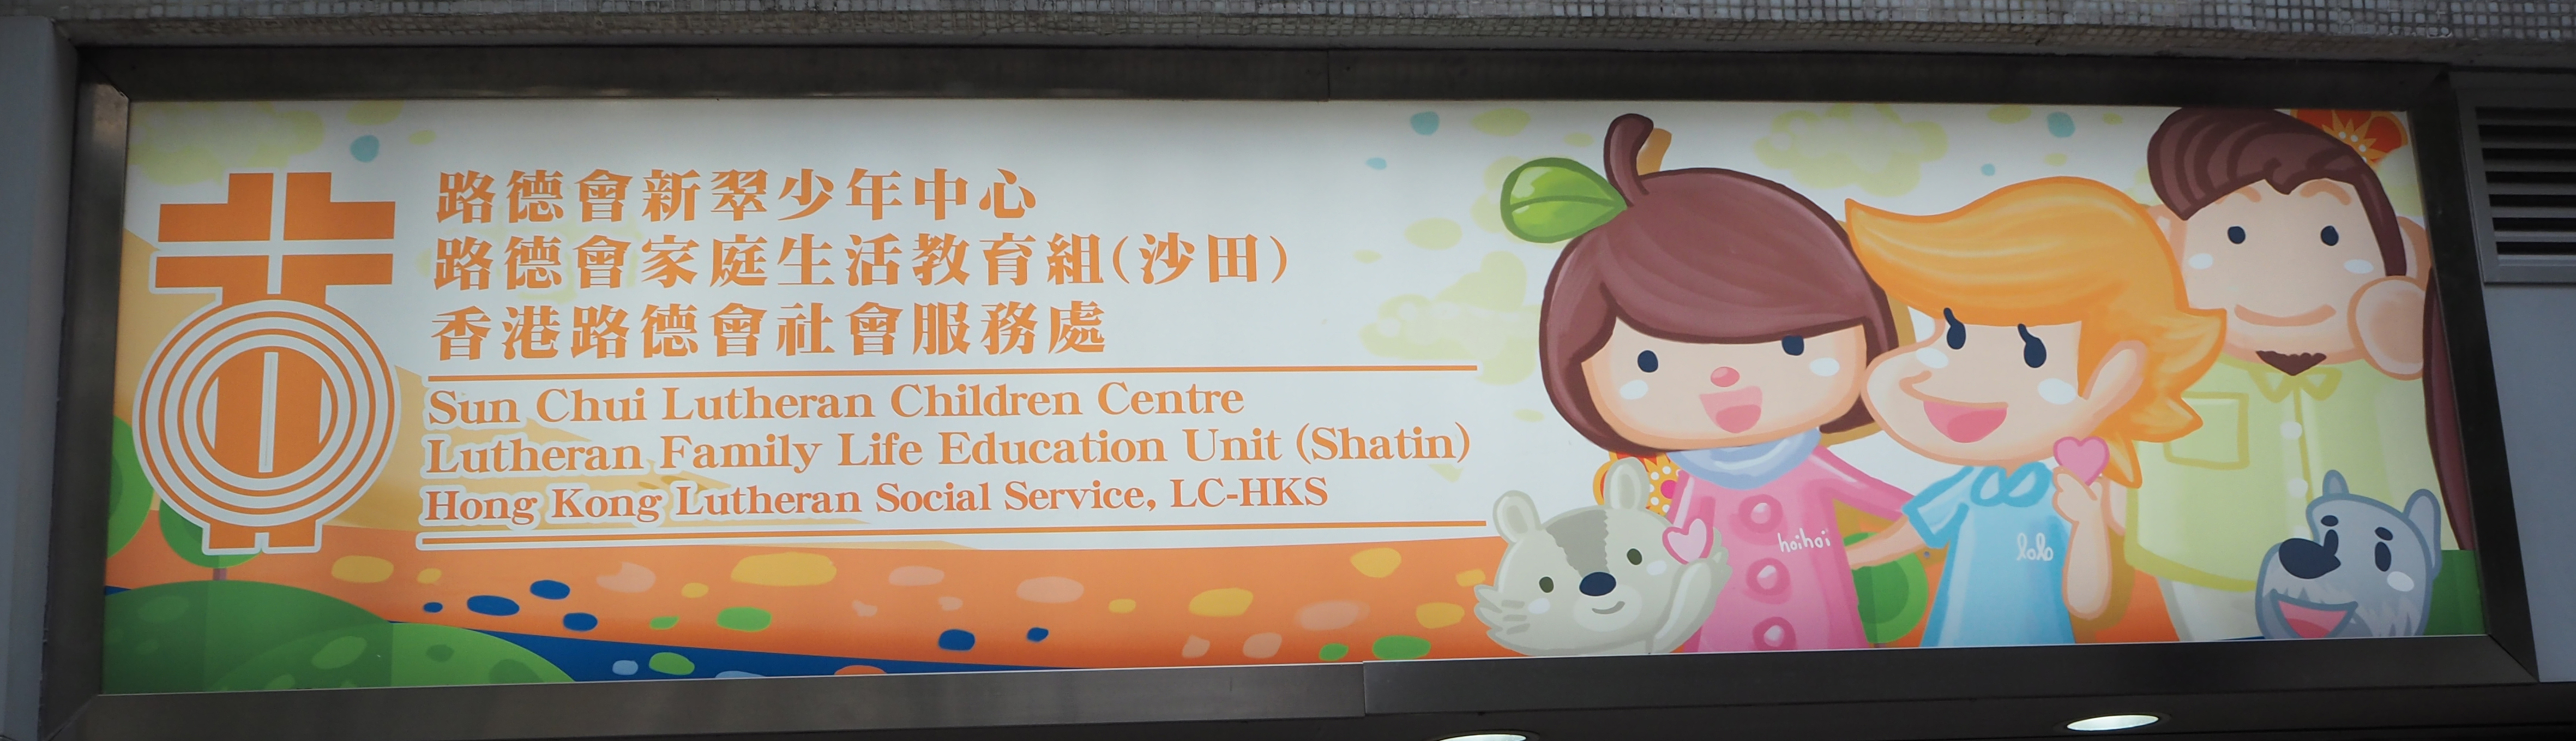 Sun Chui Lutheran Children Centre